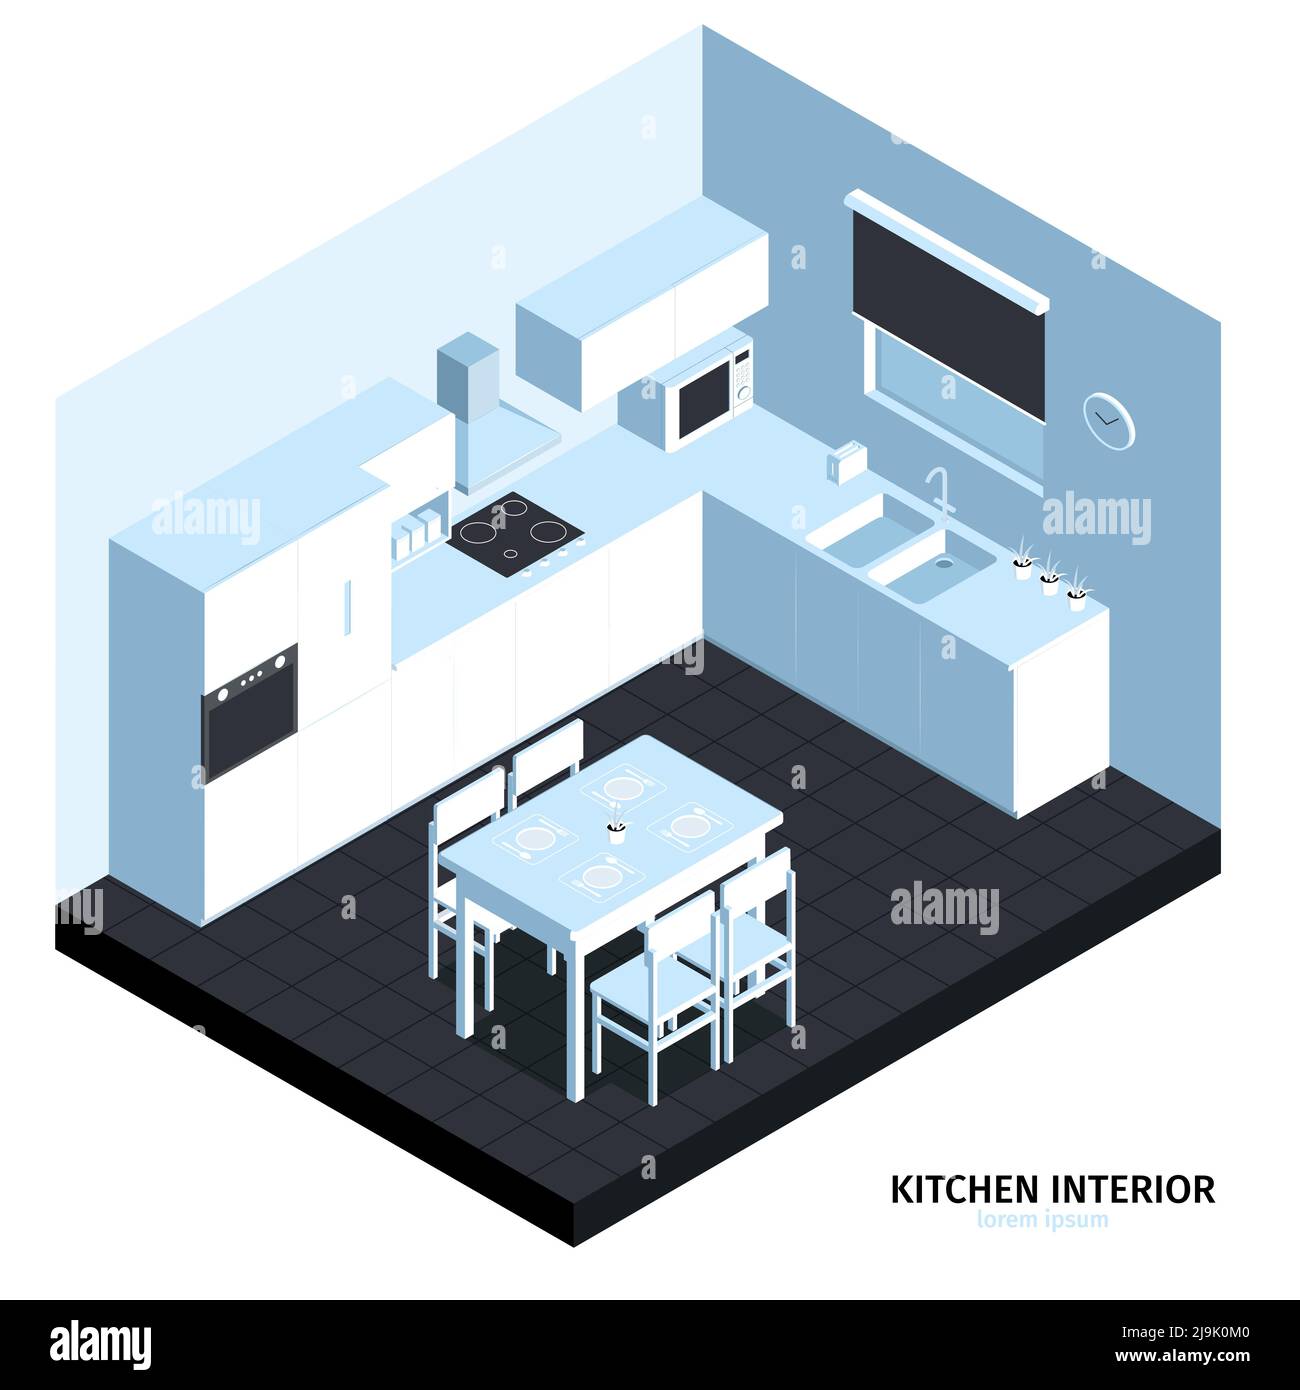 Isometrische Küche Zusammensetzung mit kubischen Blick auf den Raum mit sauber Möbel Kochmaschinen Waschbecken und Tisch Vektor-Illustration Stock Vektor